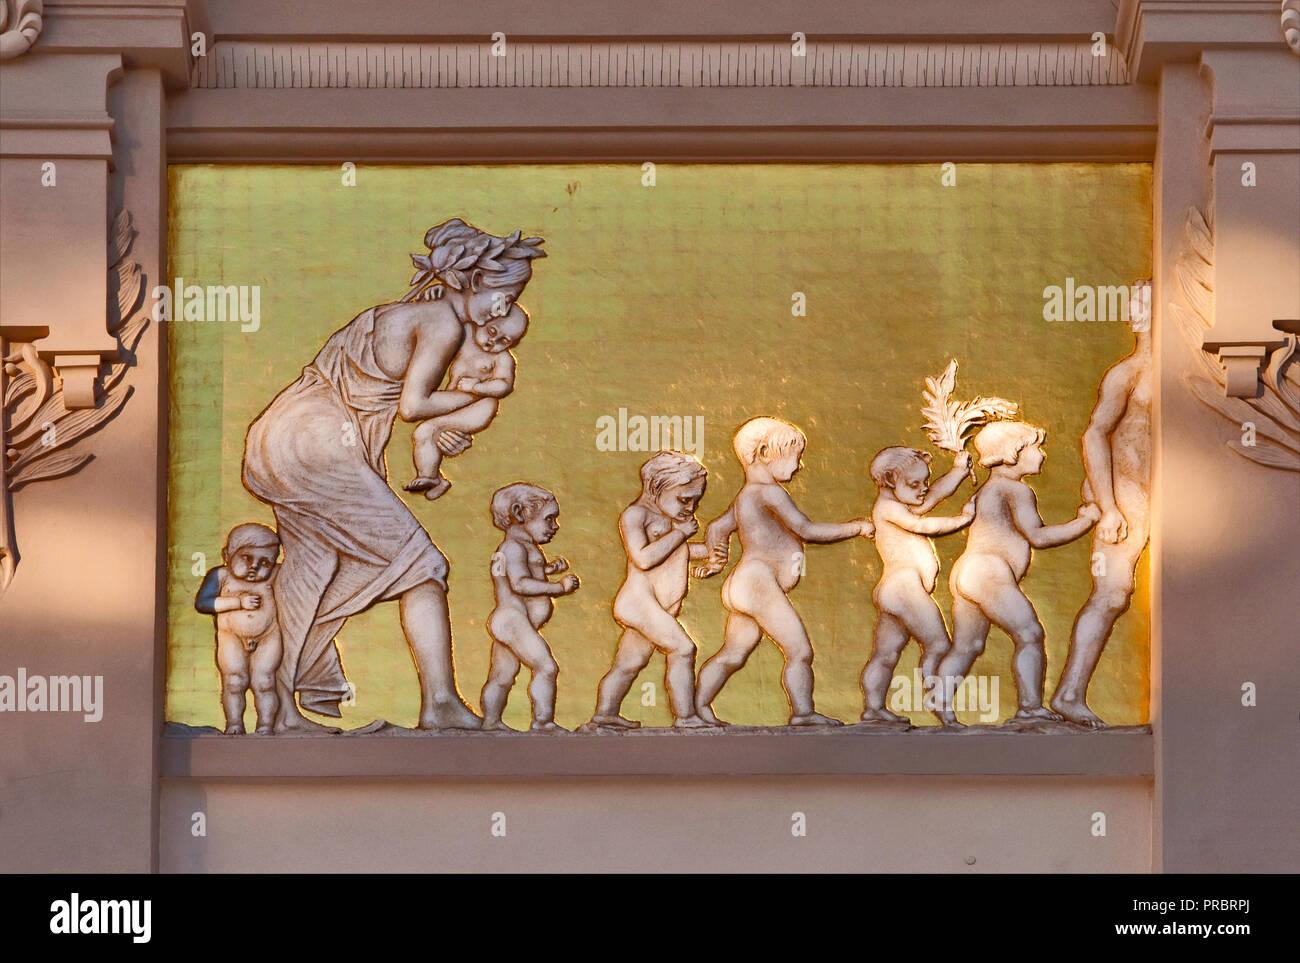 Jugendstil Flachrelief Panel, entworfen von Jacek Malczewski, am Fries der Palac Sztuki oder Palast der Künste in Krakau, Polen Stockfoto